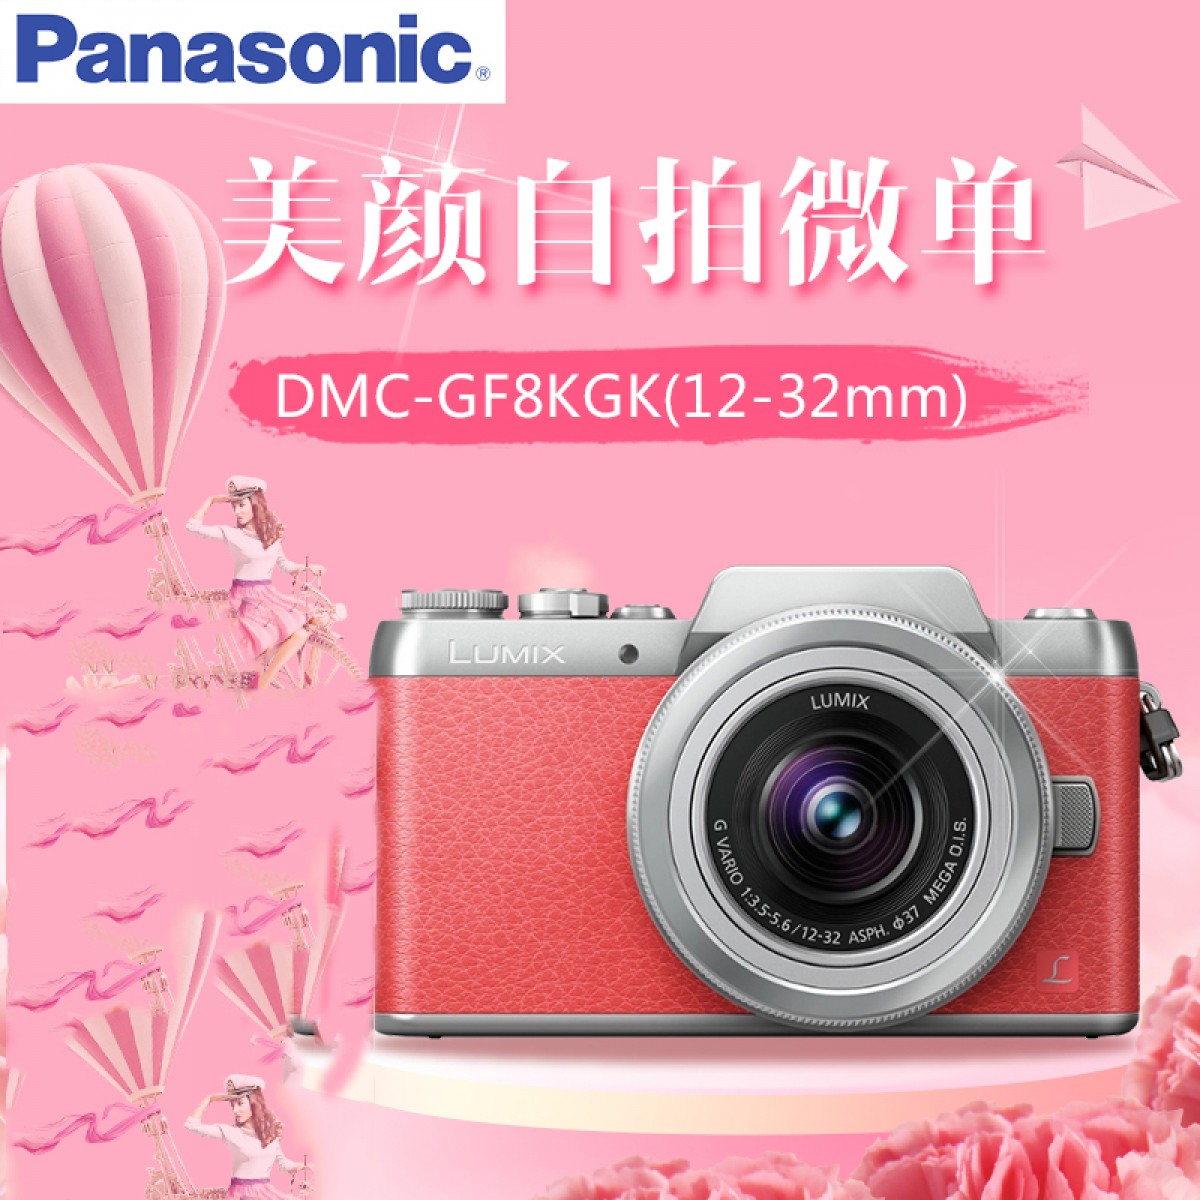 松下 DMC-GF8KGK 数码相机微单反GF8 12-32mm美颜自拍